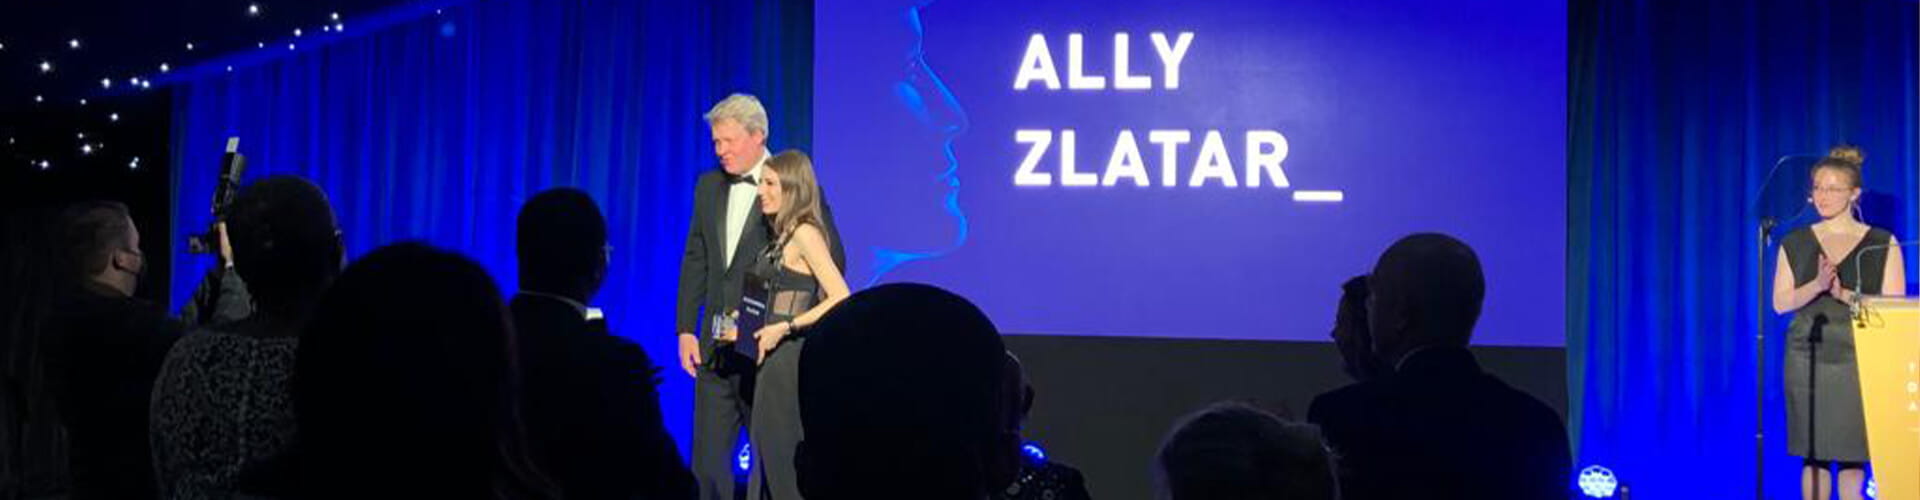 Ally Zlatar accepting an award.